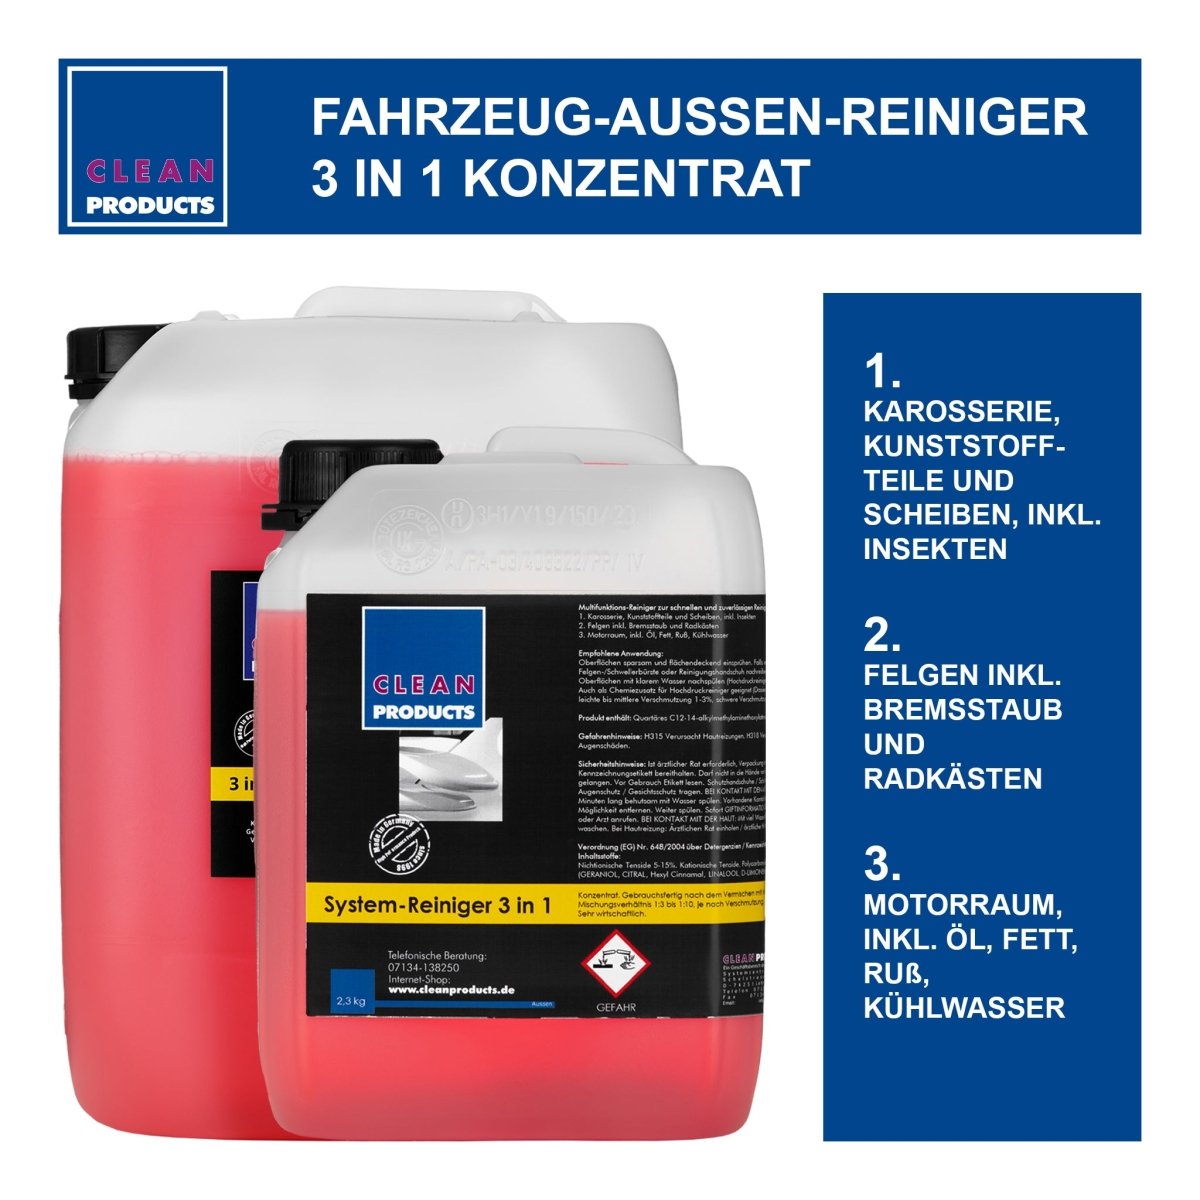 Fahrzeug-Außen-Reiniger 3 in 1 (Konzentrat) - 2,3 Liter - CLEANPRODUCTS